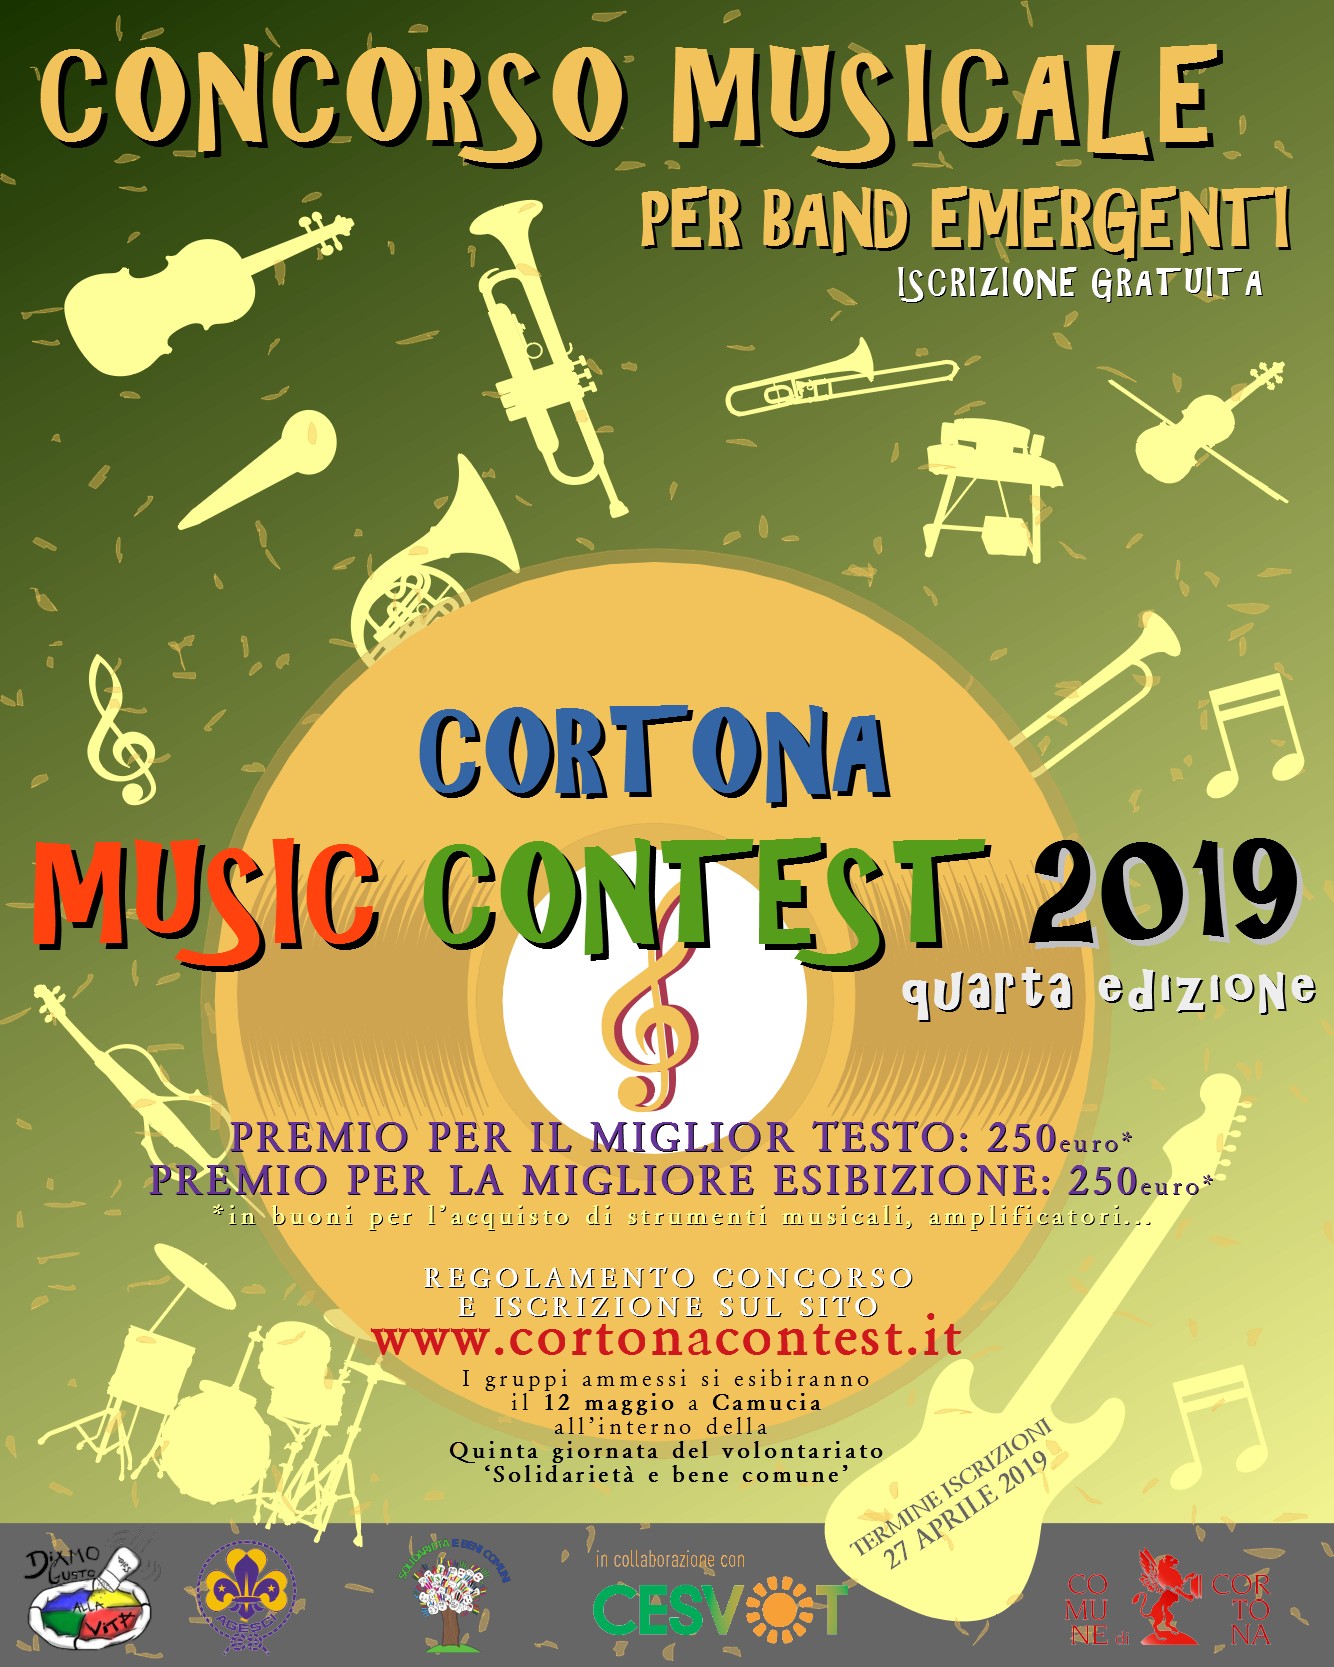 Cortona Music Contest: un'occasione per tutti i giovani musicisti